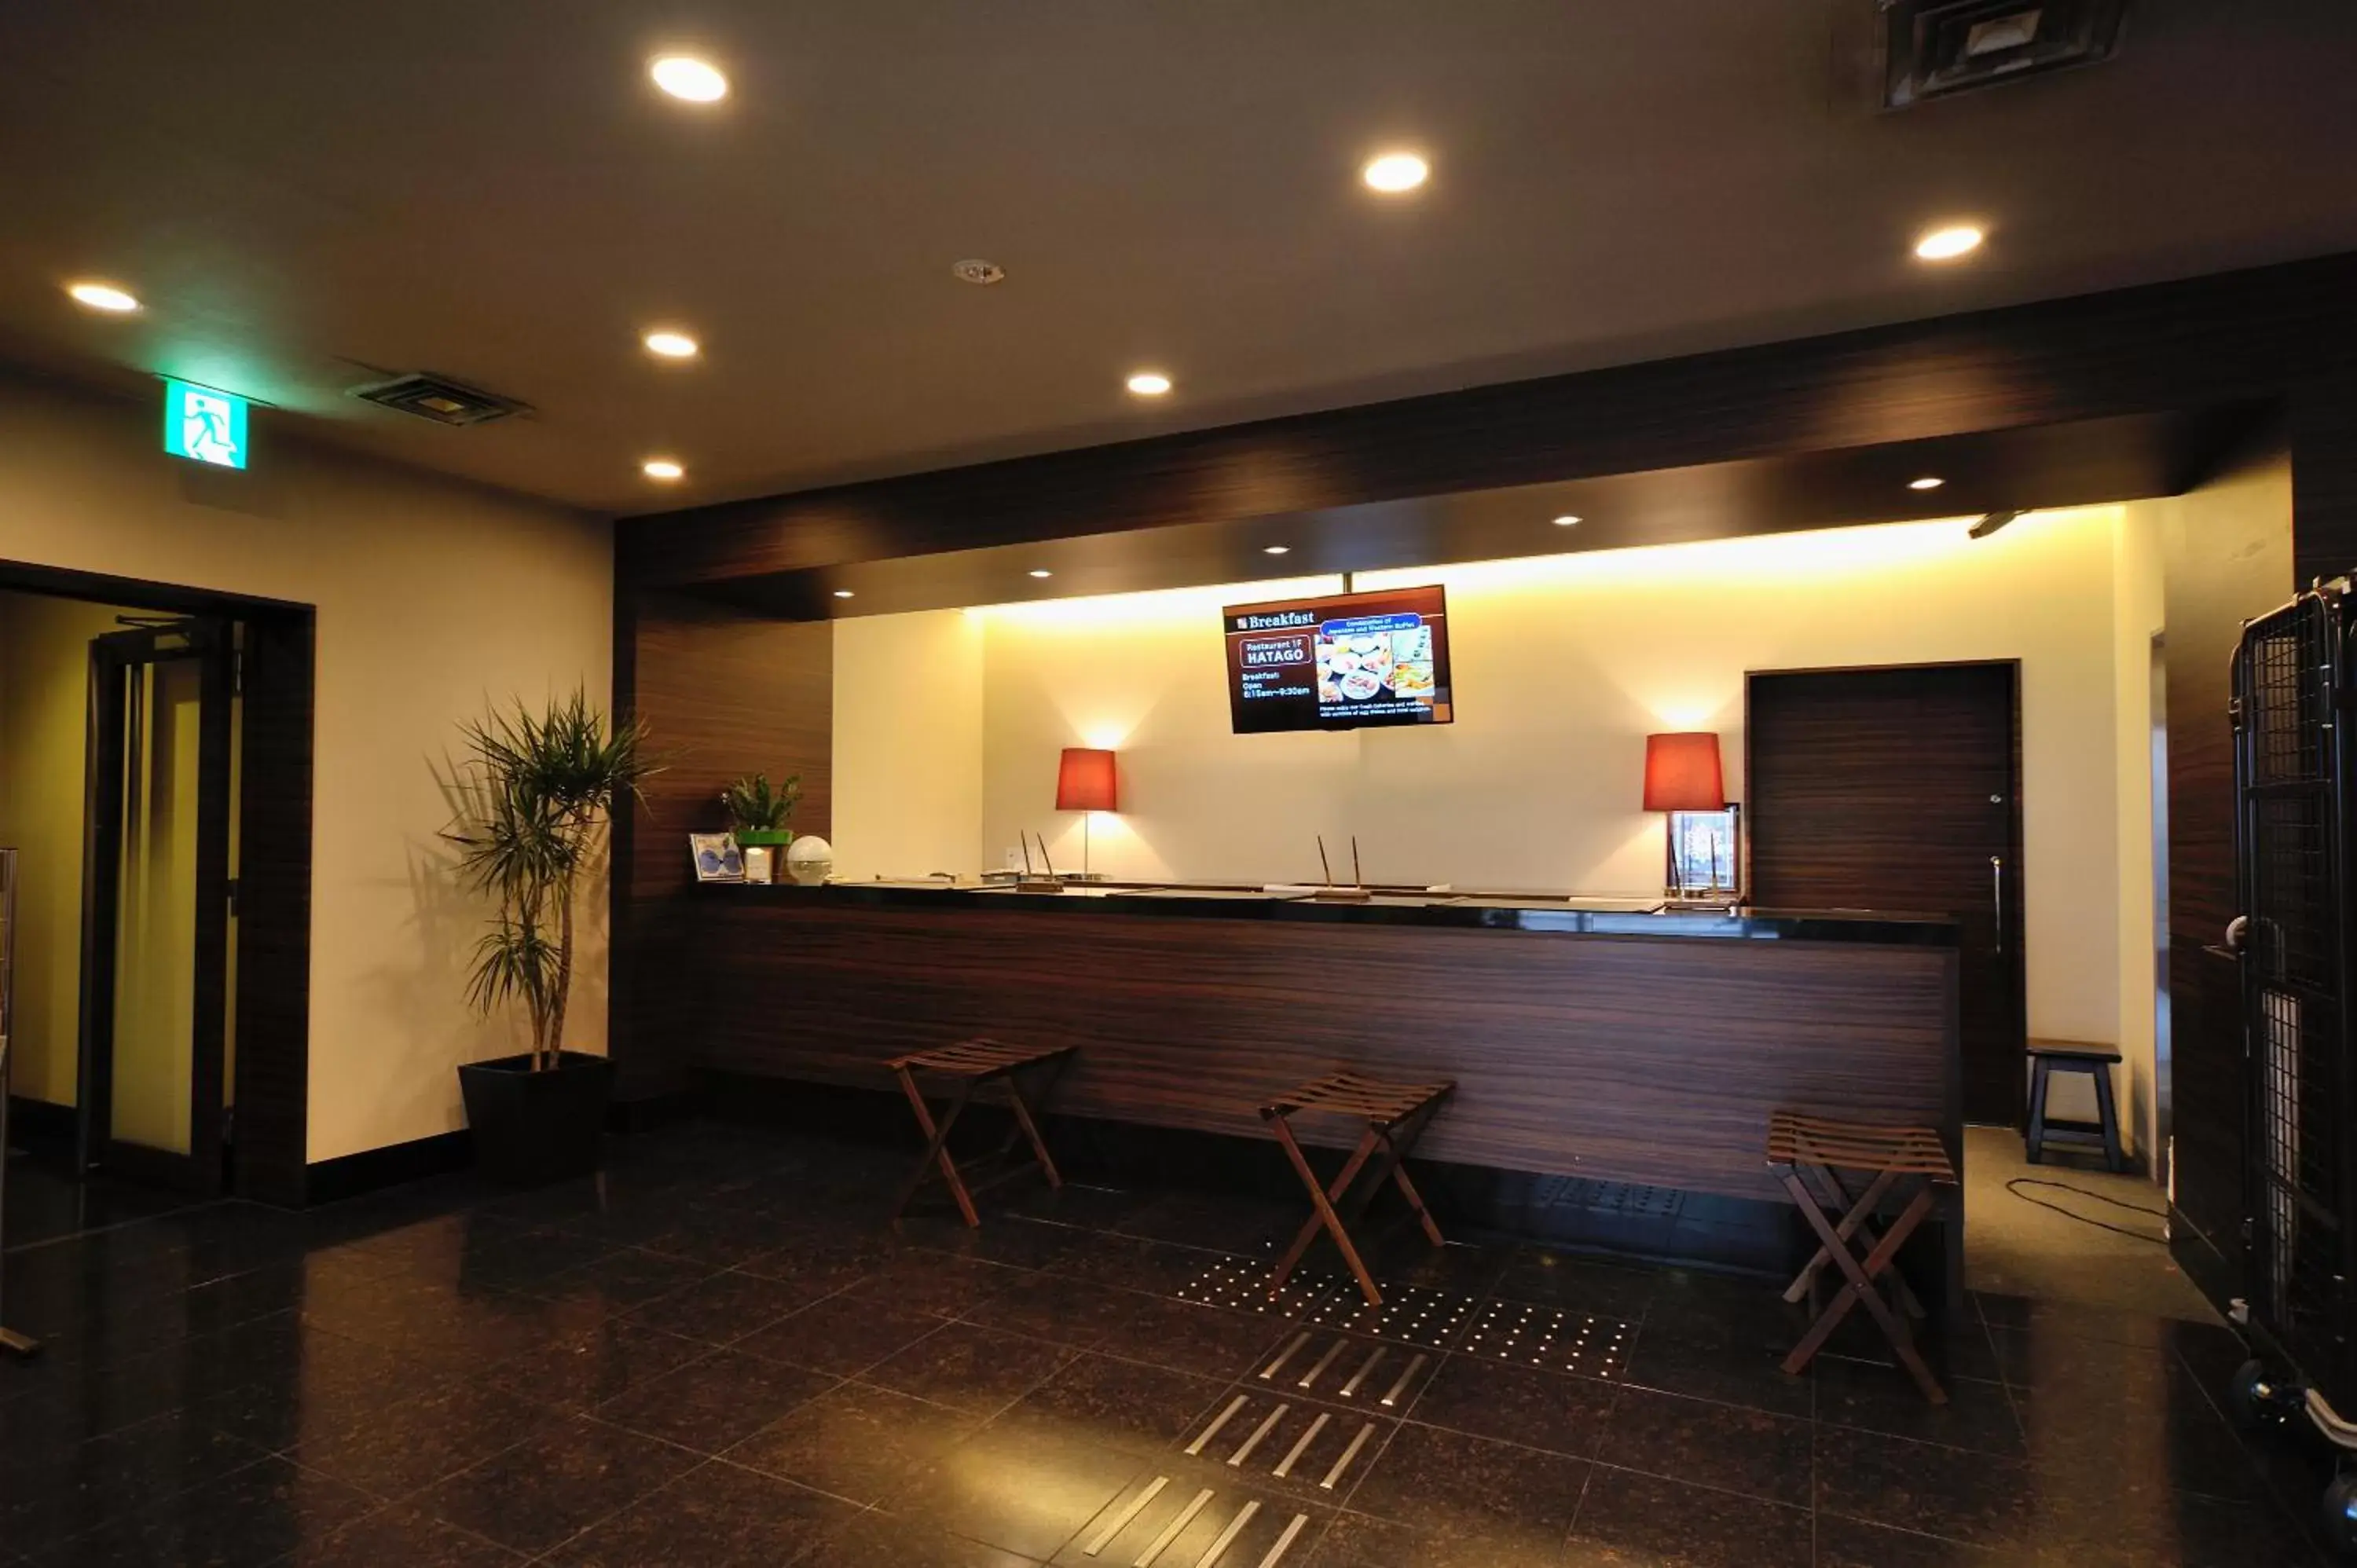 Lobby or reception in Dormy Inn Kofu